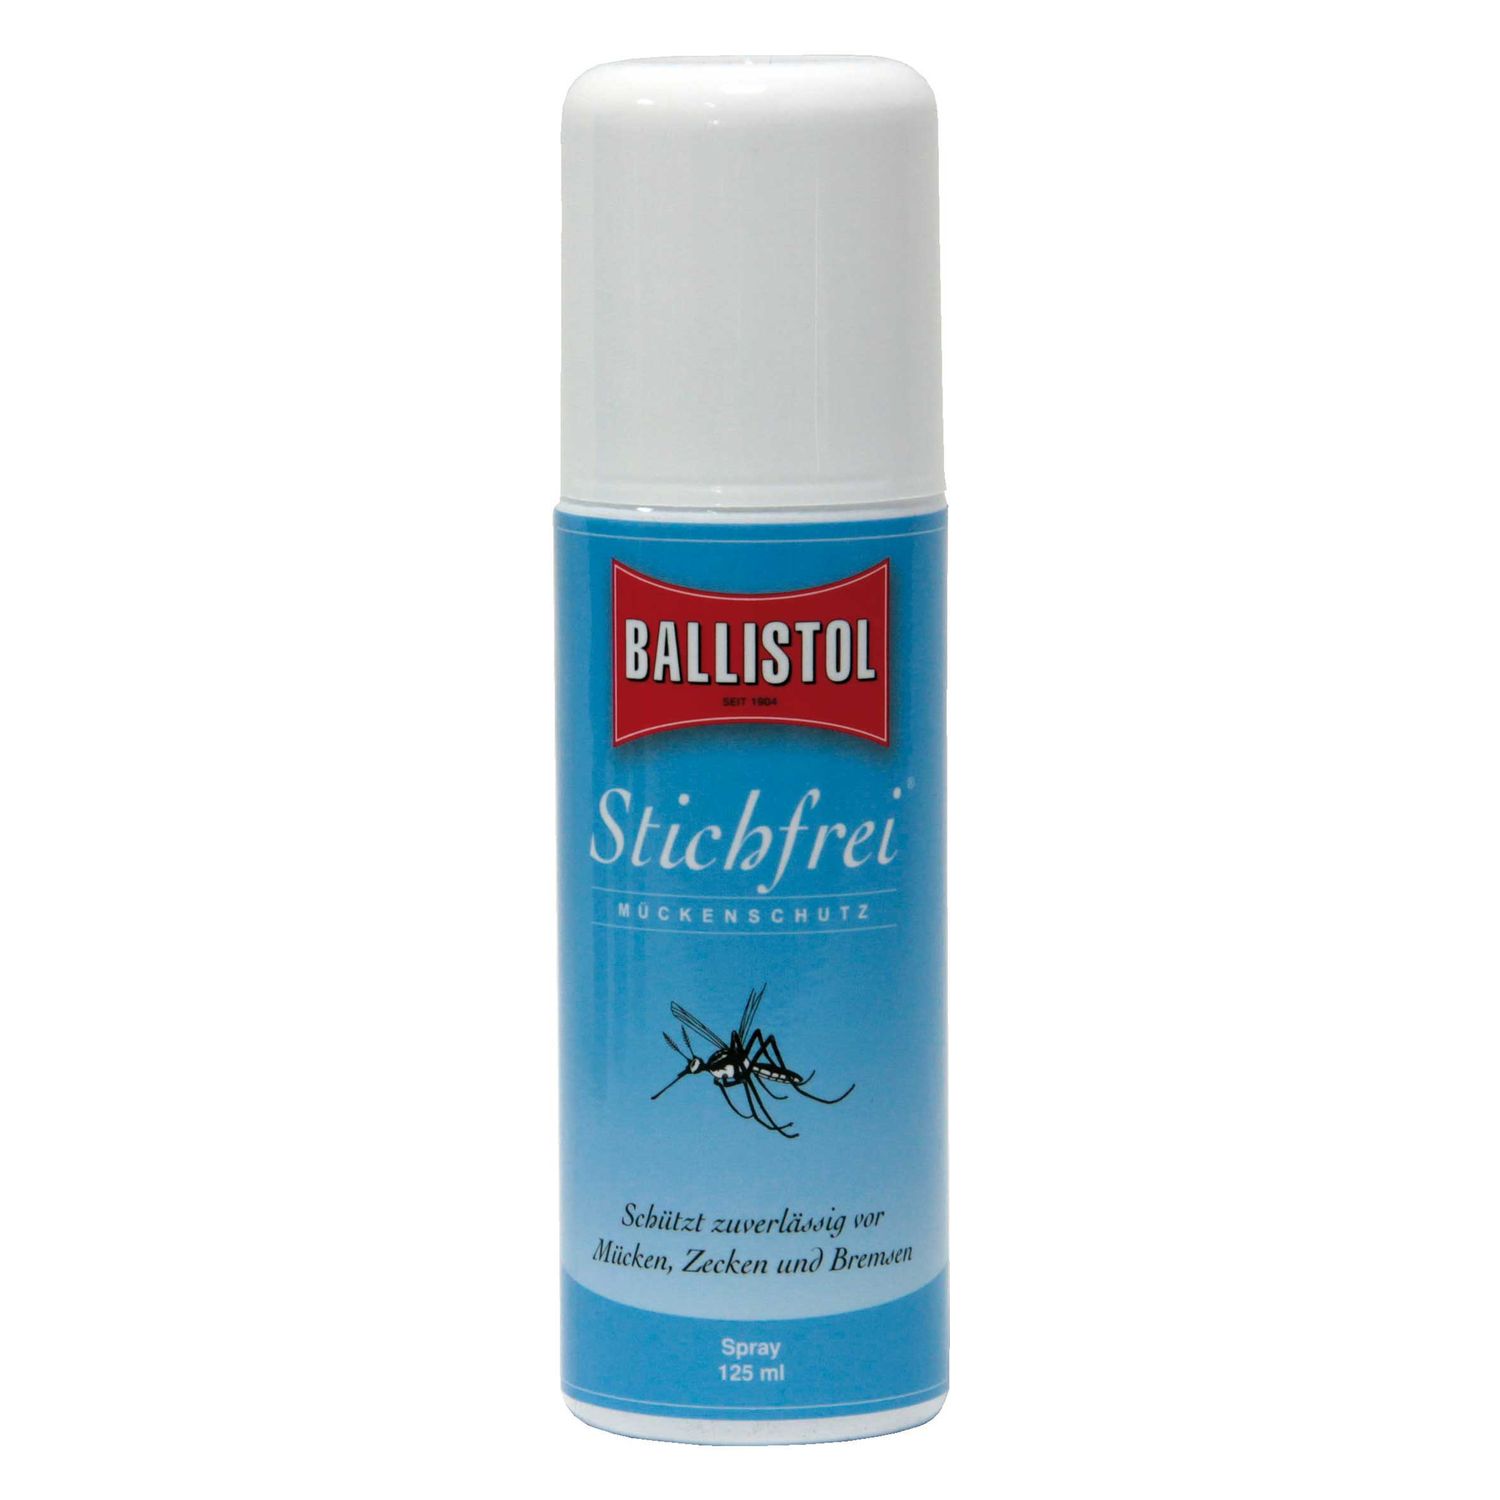 BALLISTOL Stichfrei-Mückenschutz, Spraydose 125 ml